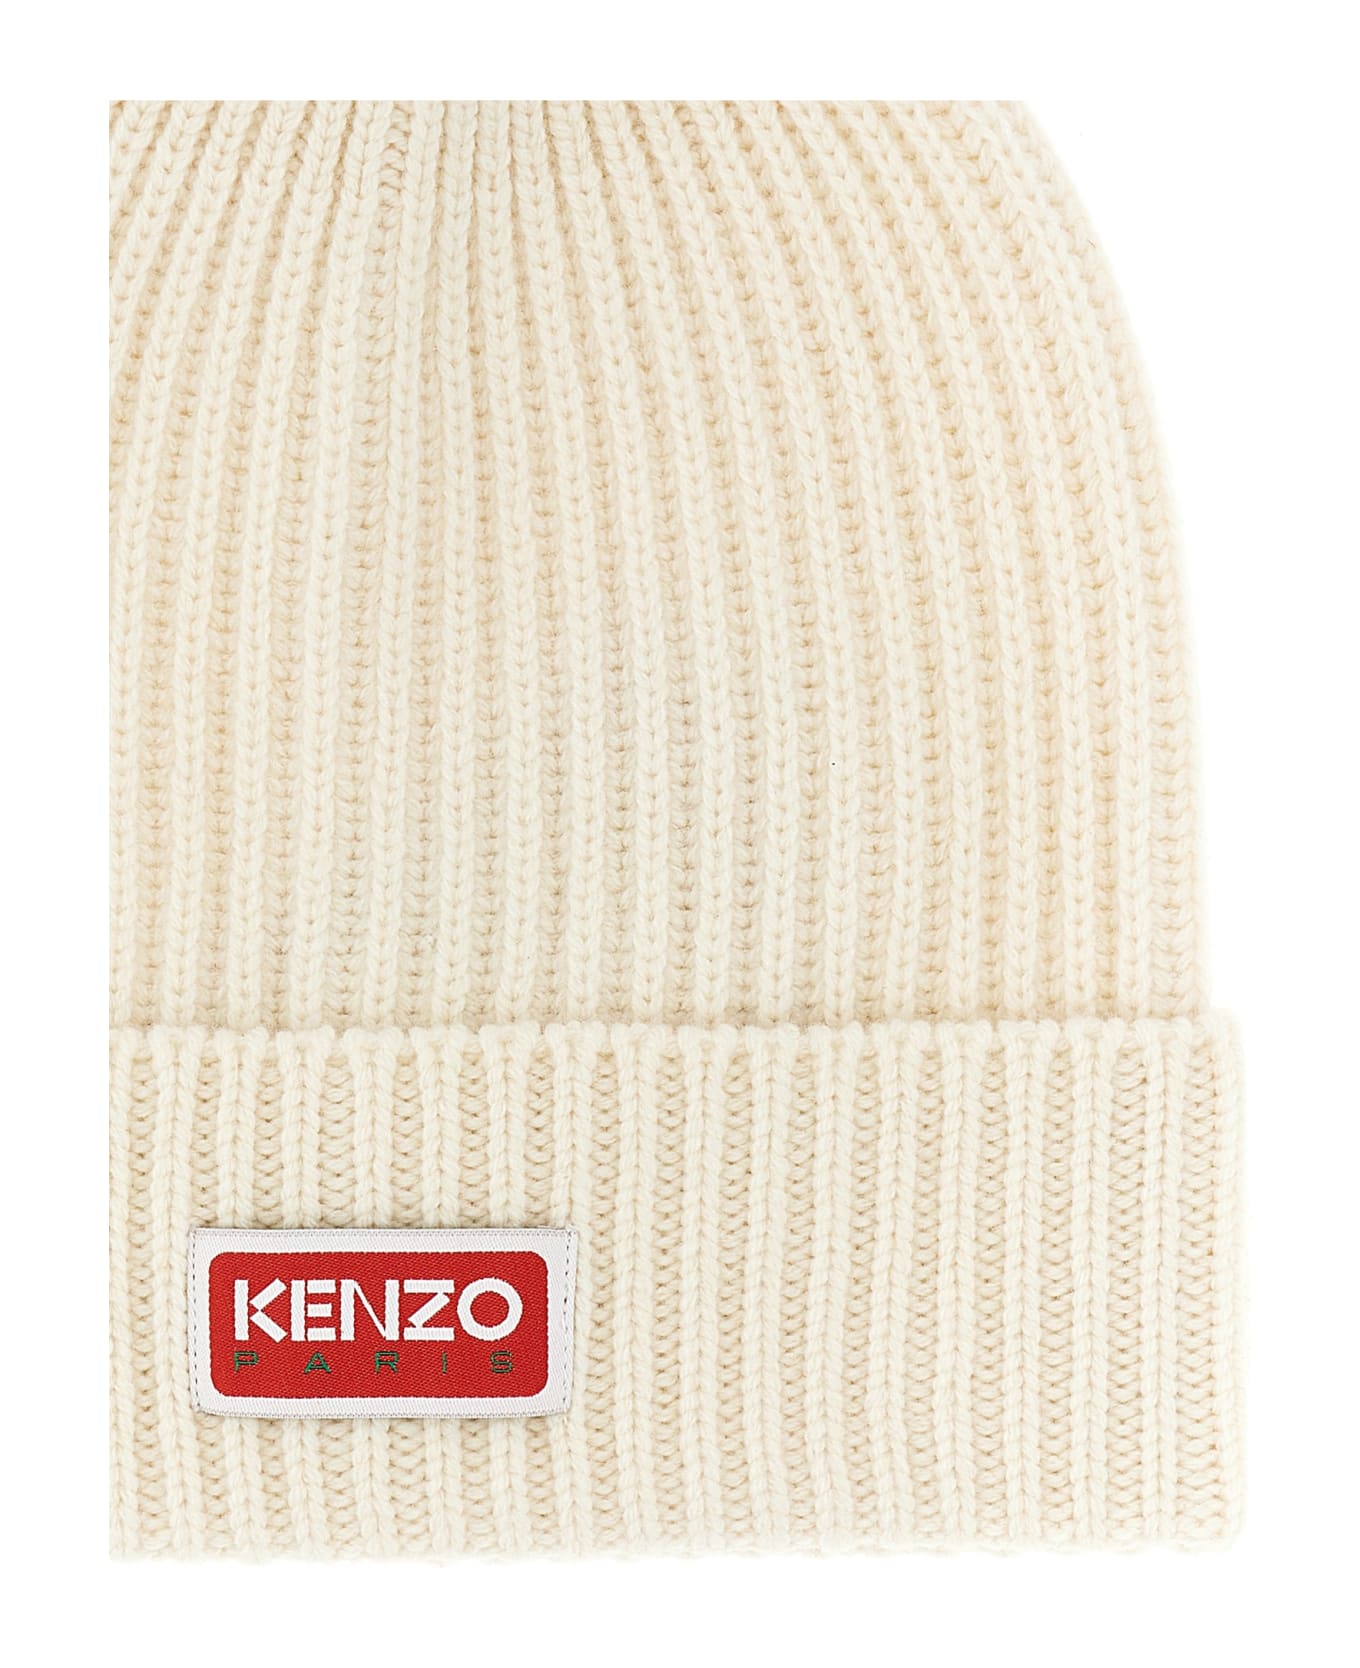 Kenzo Logo Patch Beanie - Blanc Casse 帽子